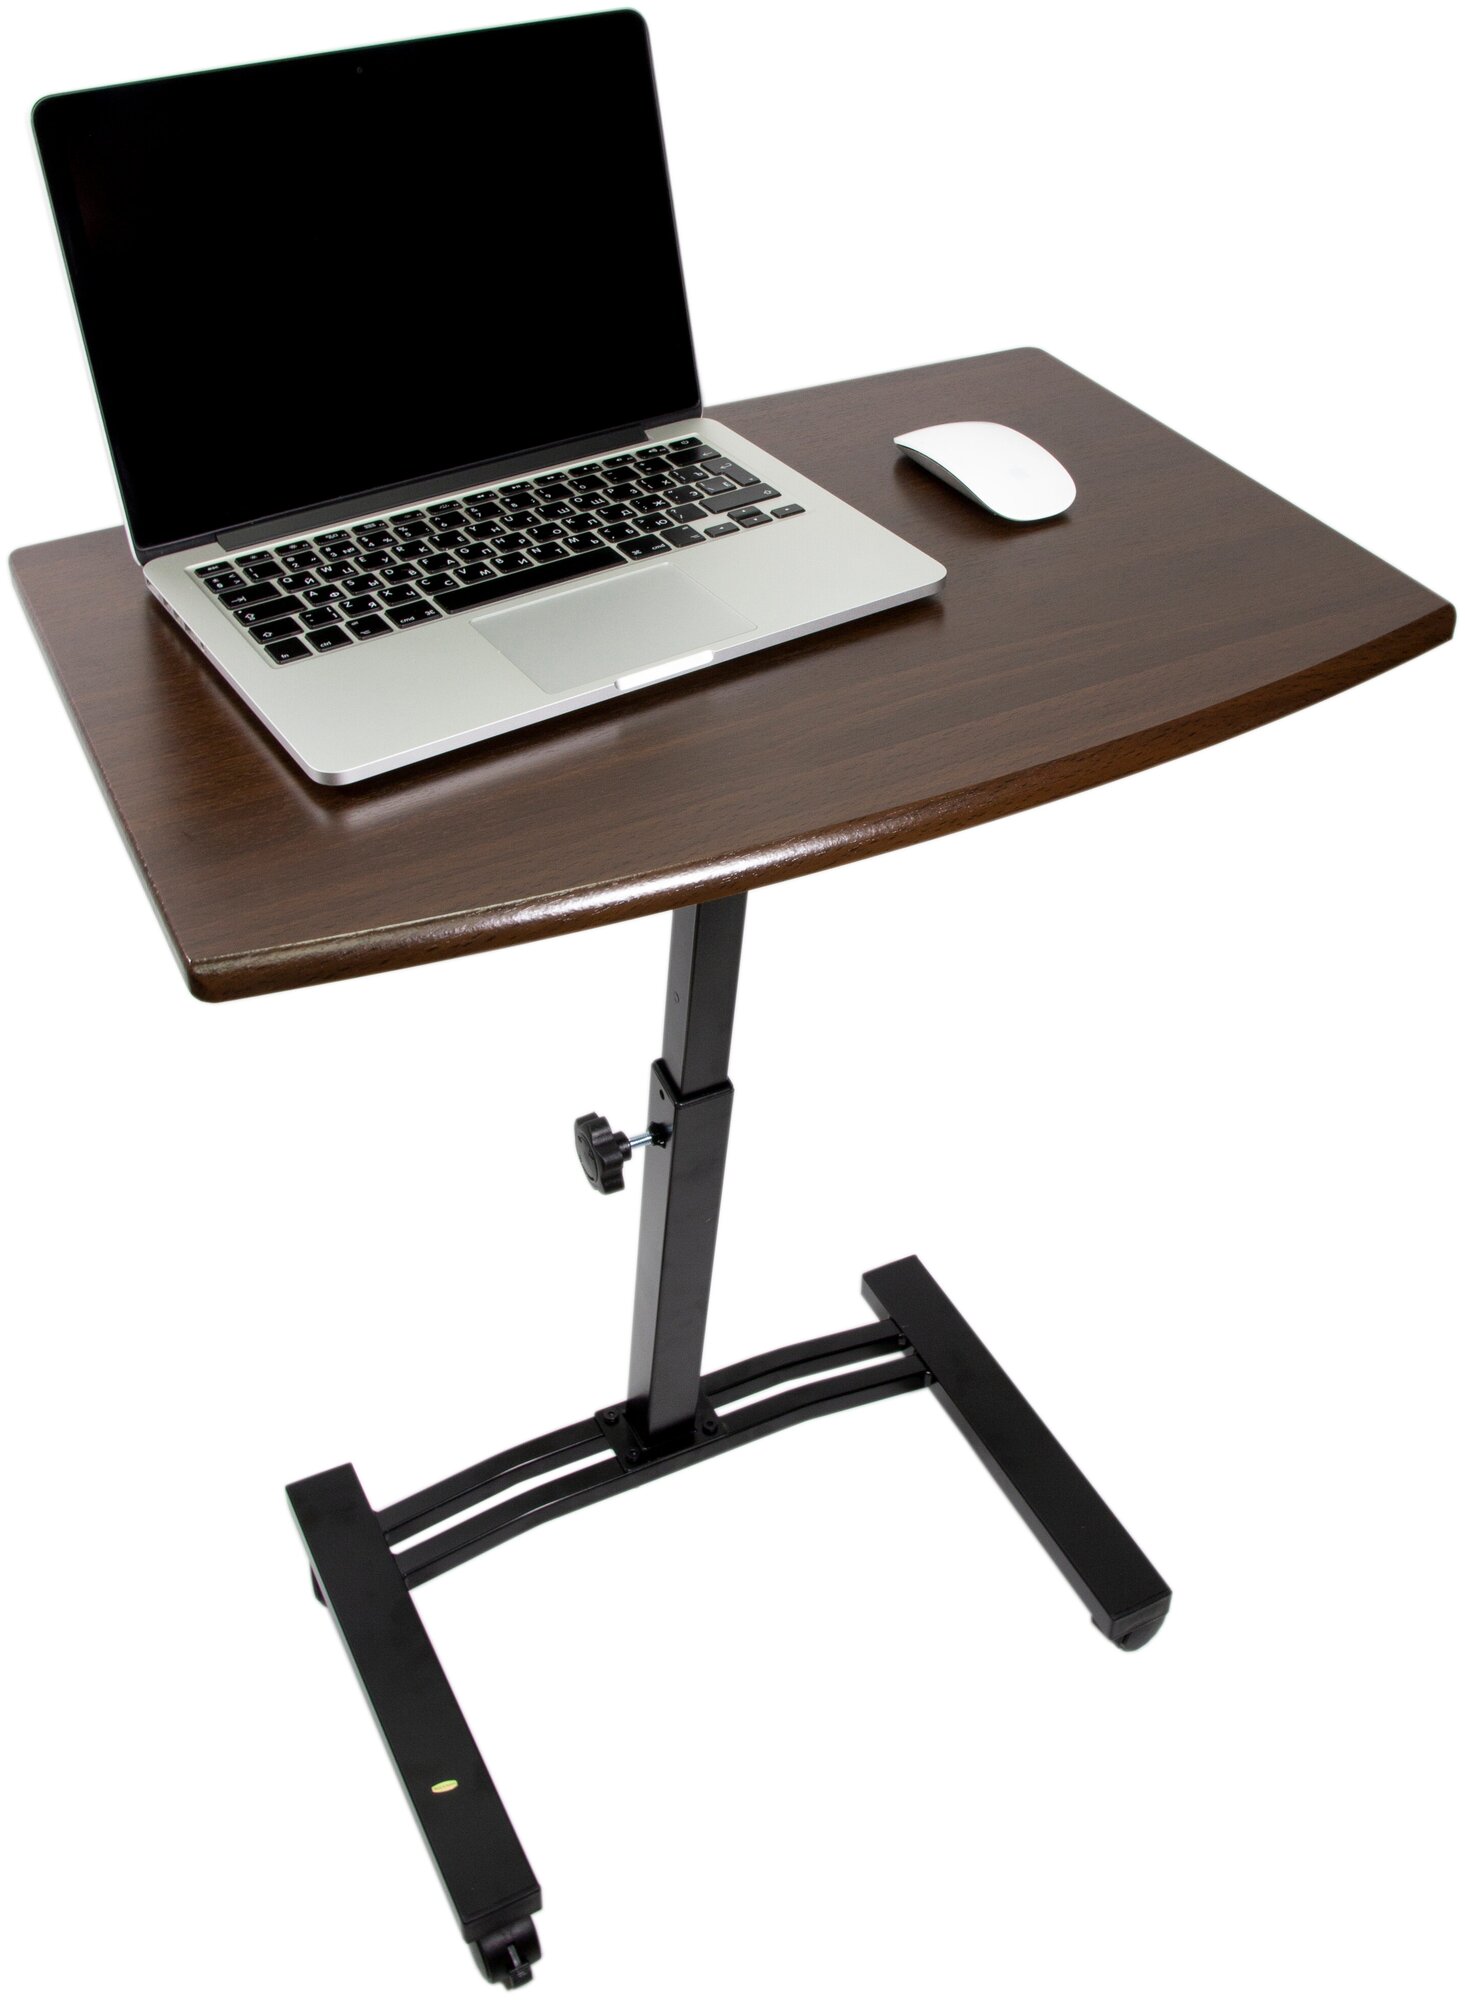 Стол для ноутбука UniStor EDDY на колесиках и с регулировкой столешницы по высоте.